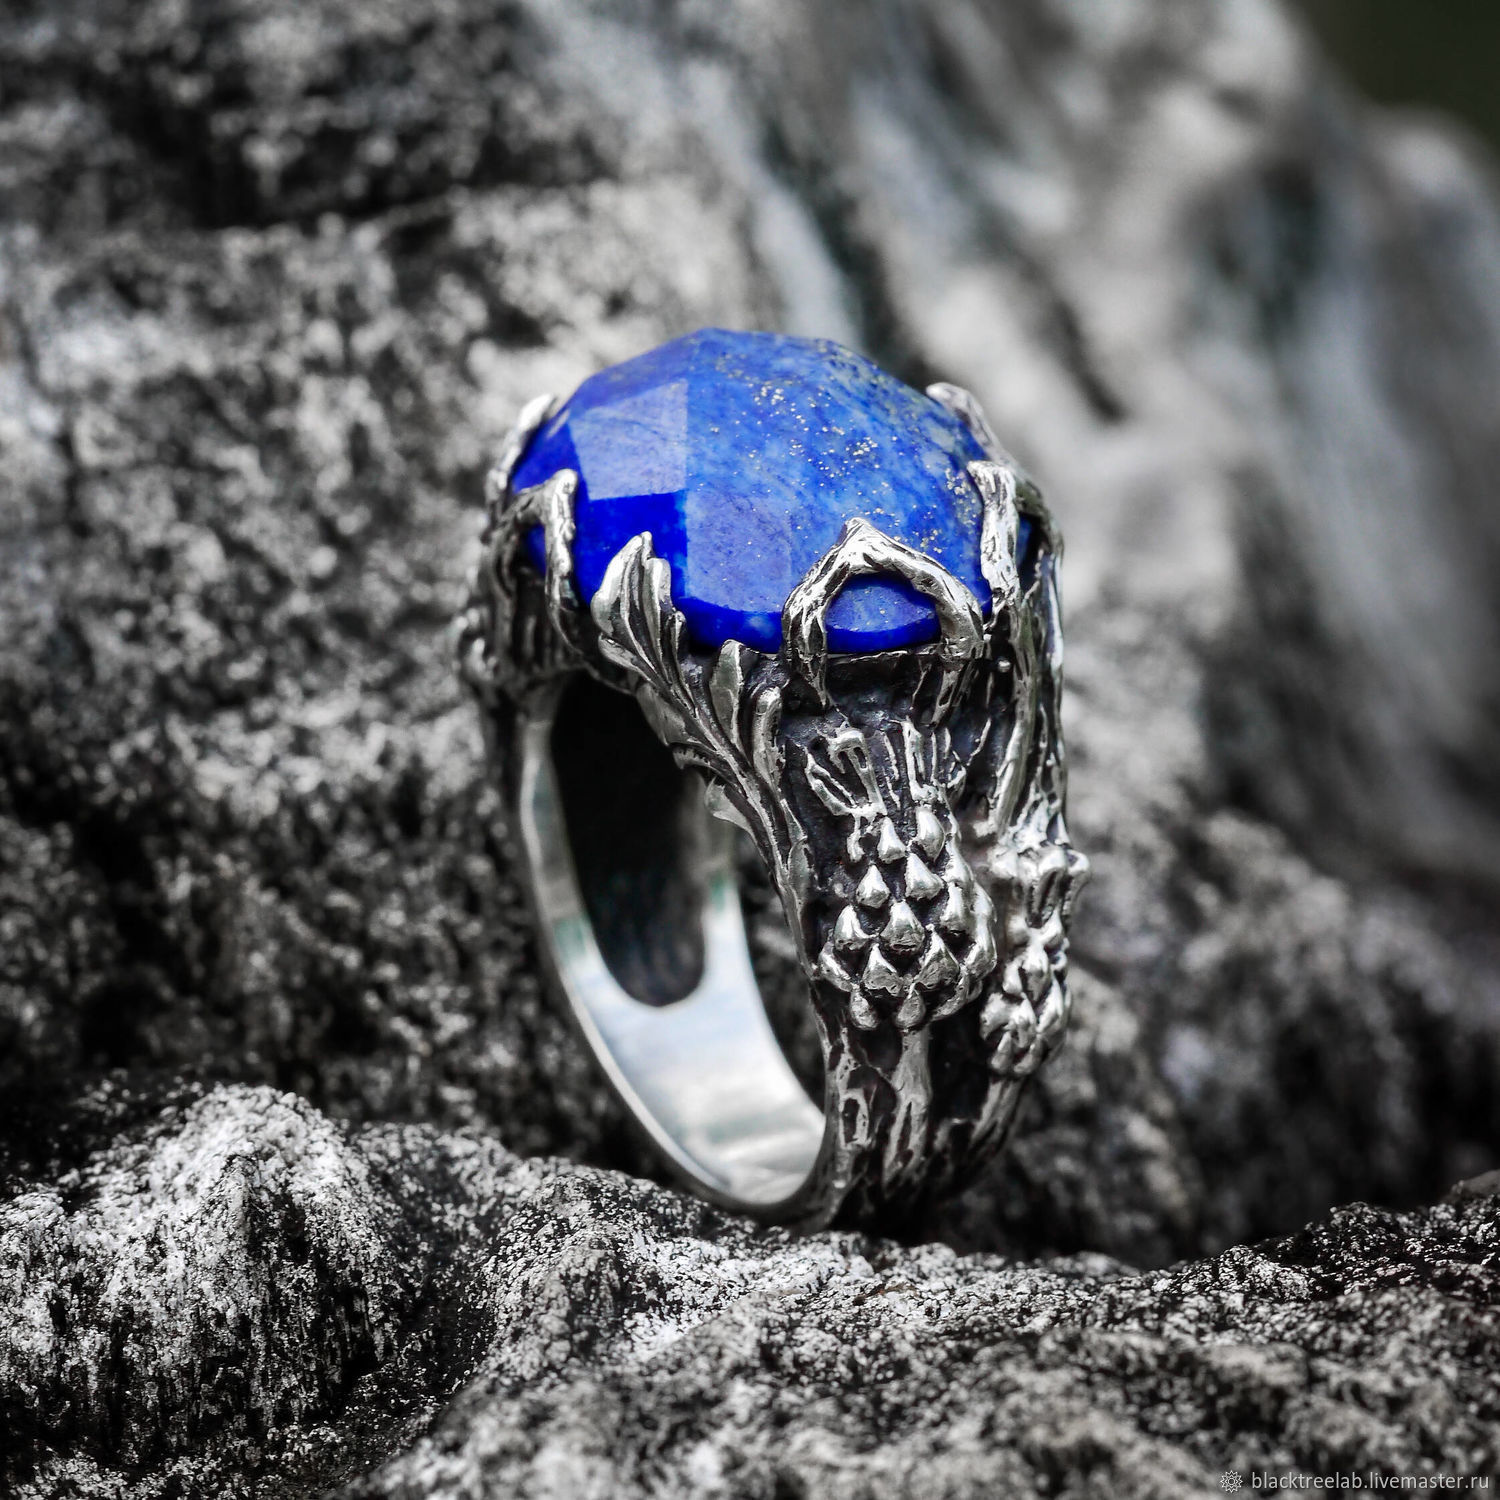 Синий камень на кольце